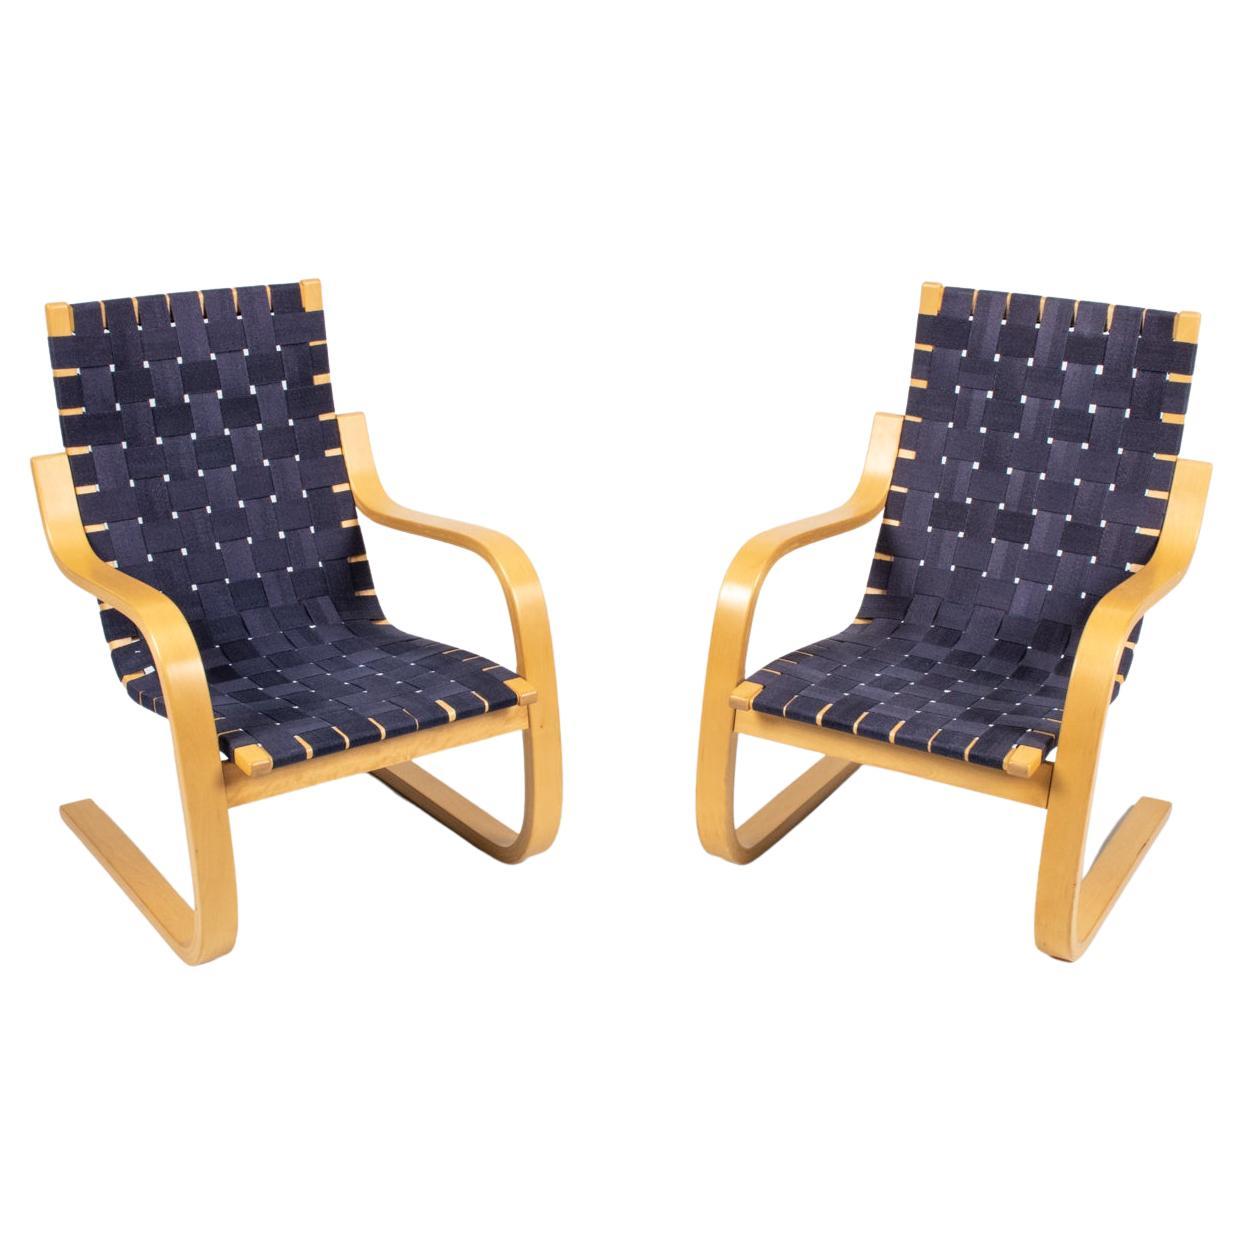 Pair of Alvar Aalto for Artek Model 406 Cantilever Chairs